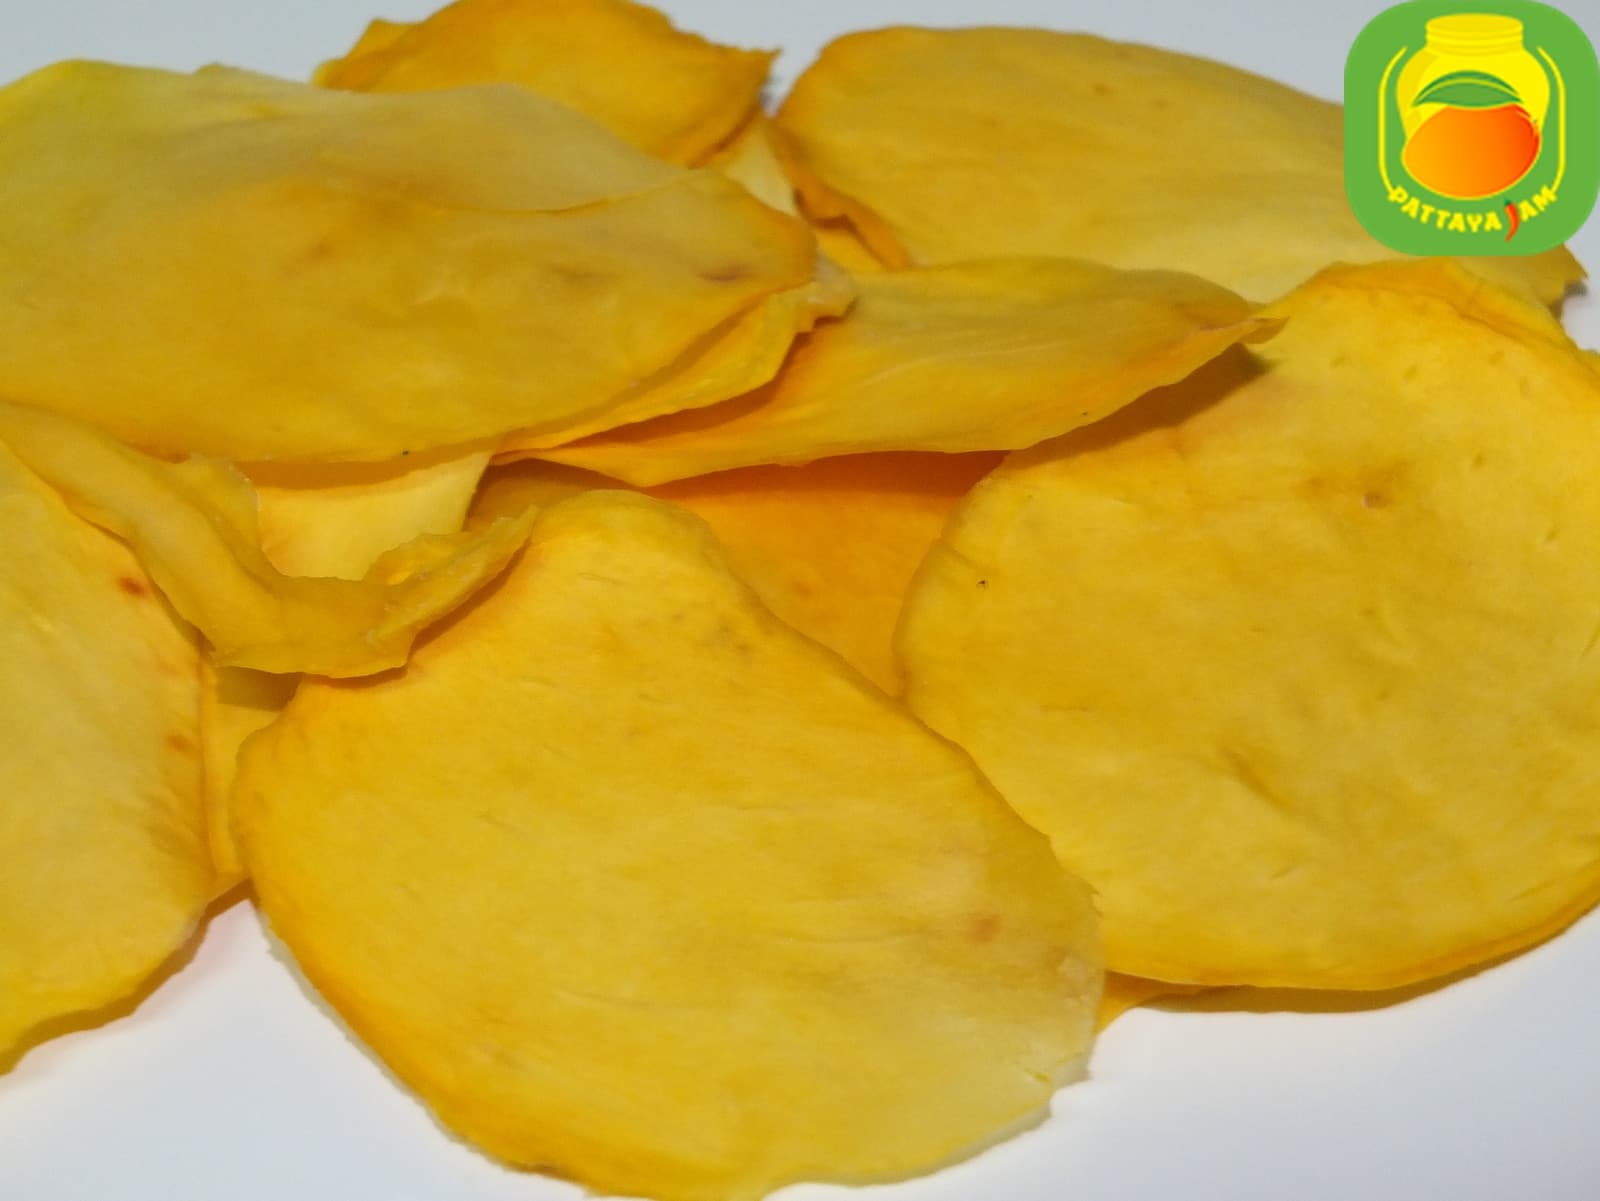 Вяленый или сушеный тонкий манго - чипс, без сахара